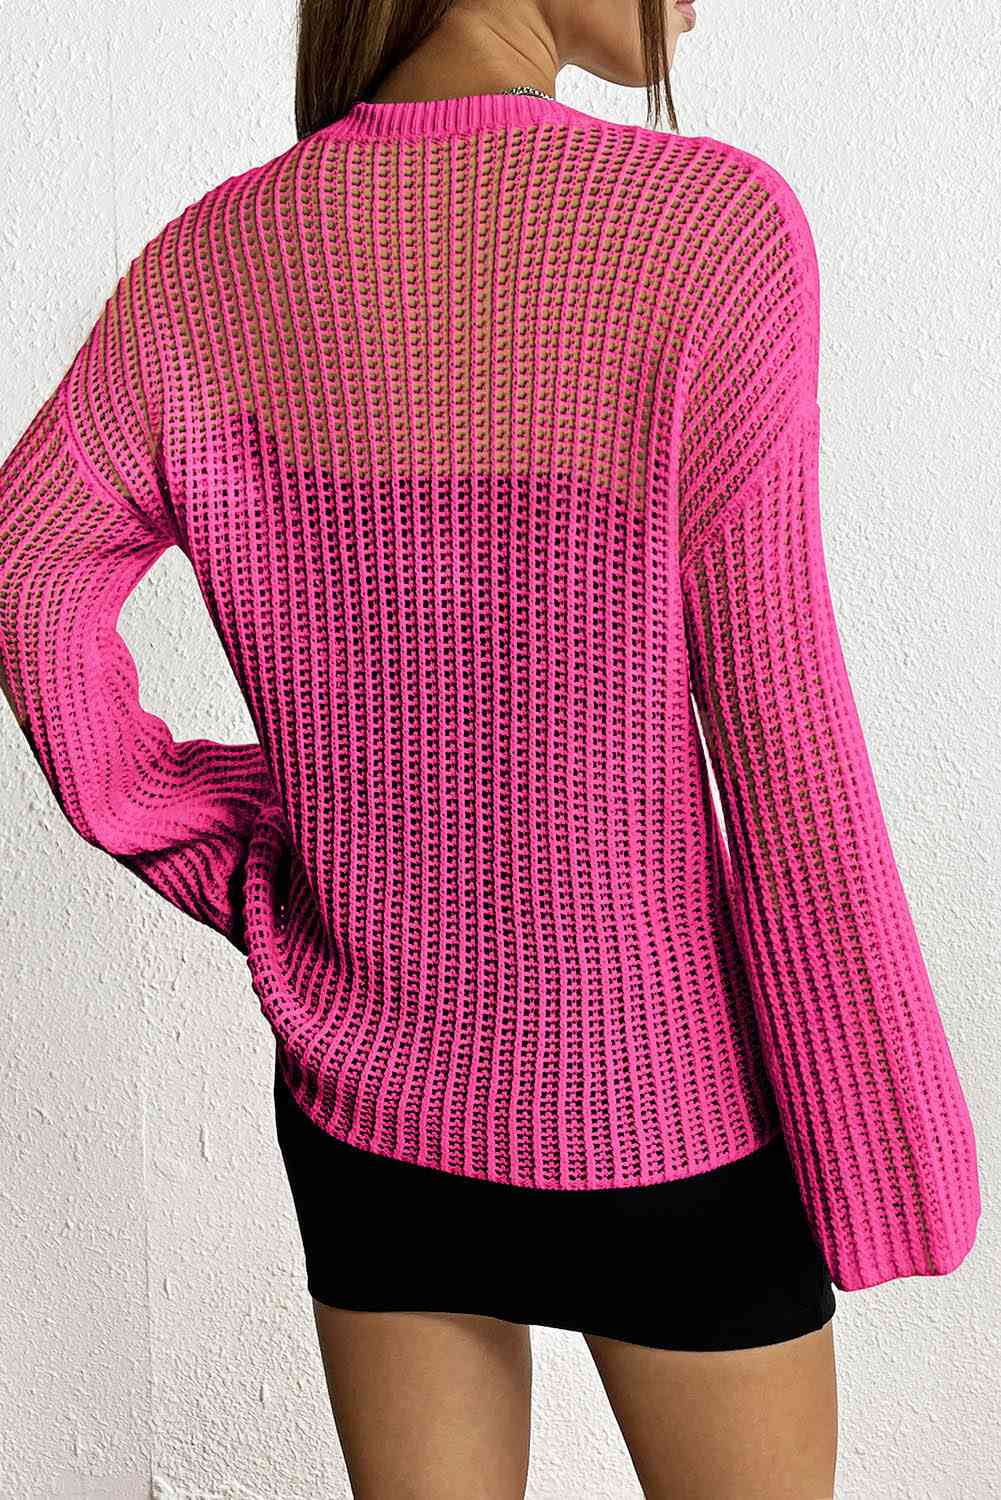 Star Rib-Knit Sweater